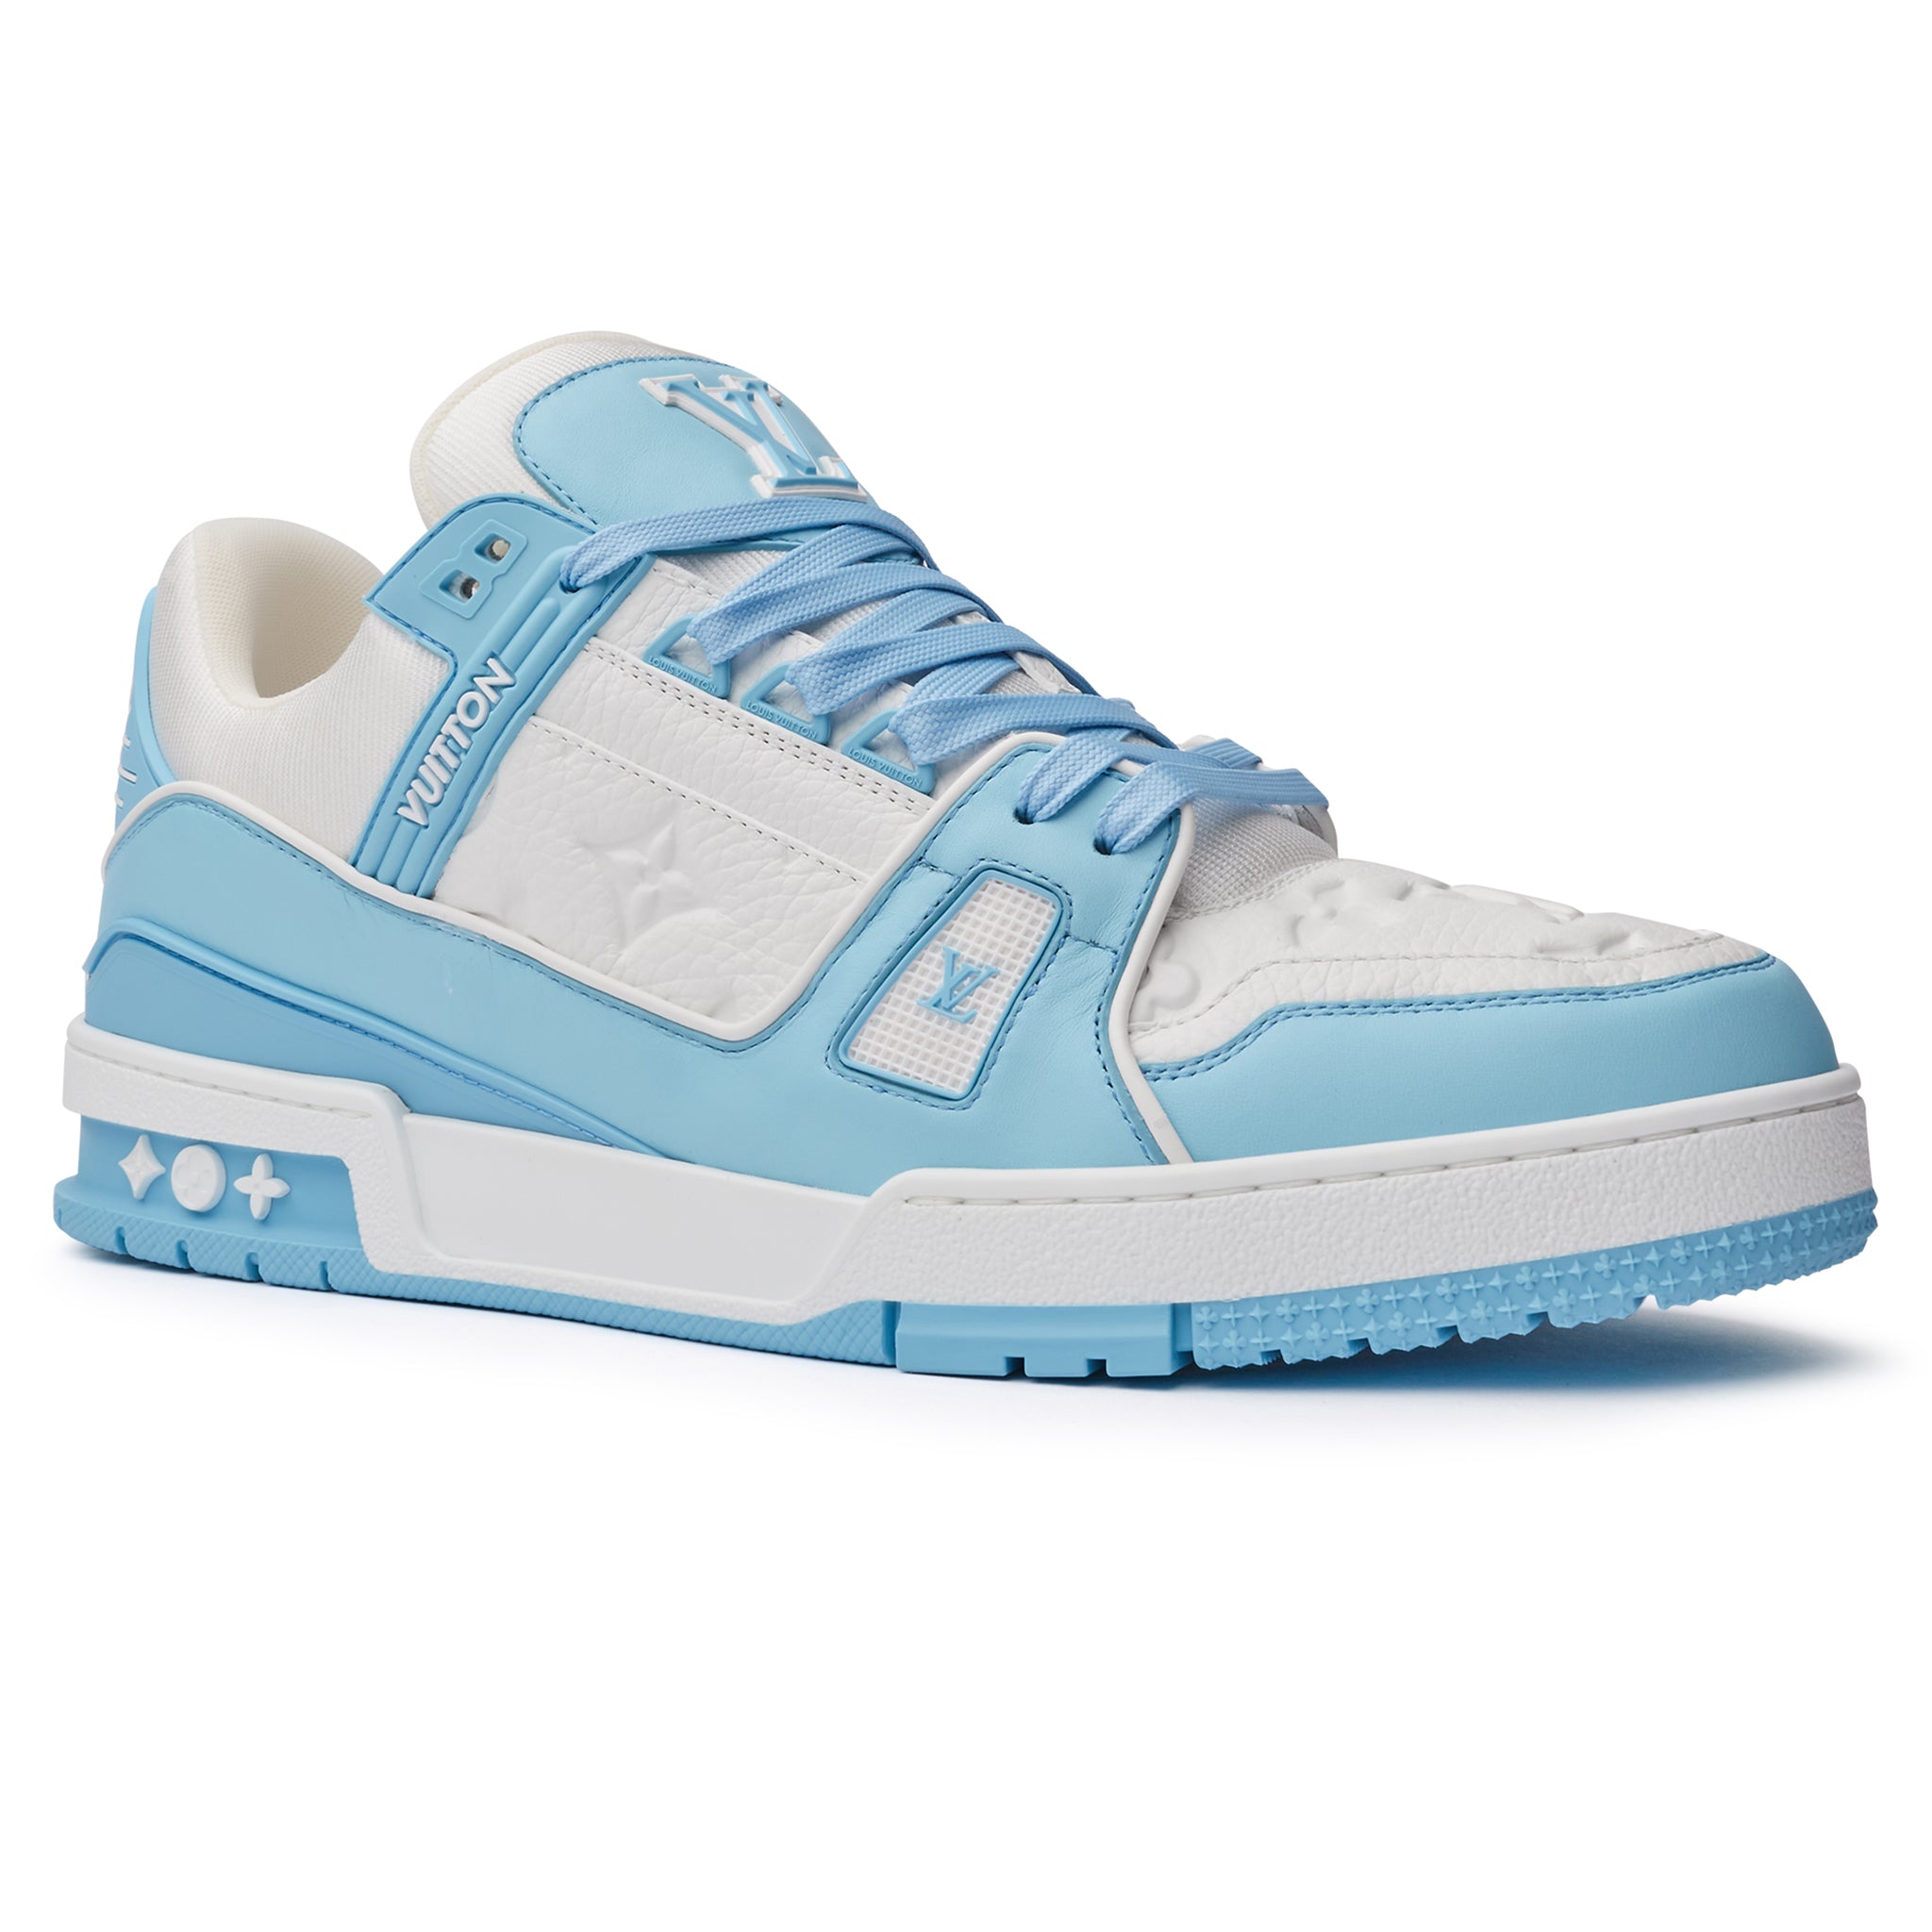 Louis Vuitton Trainer White Blue Men'S Sneakers Shoes